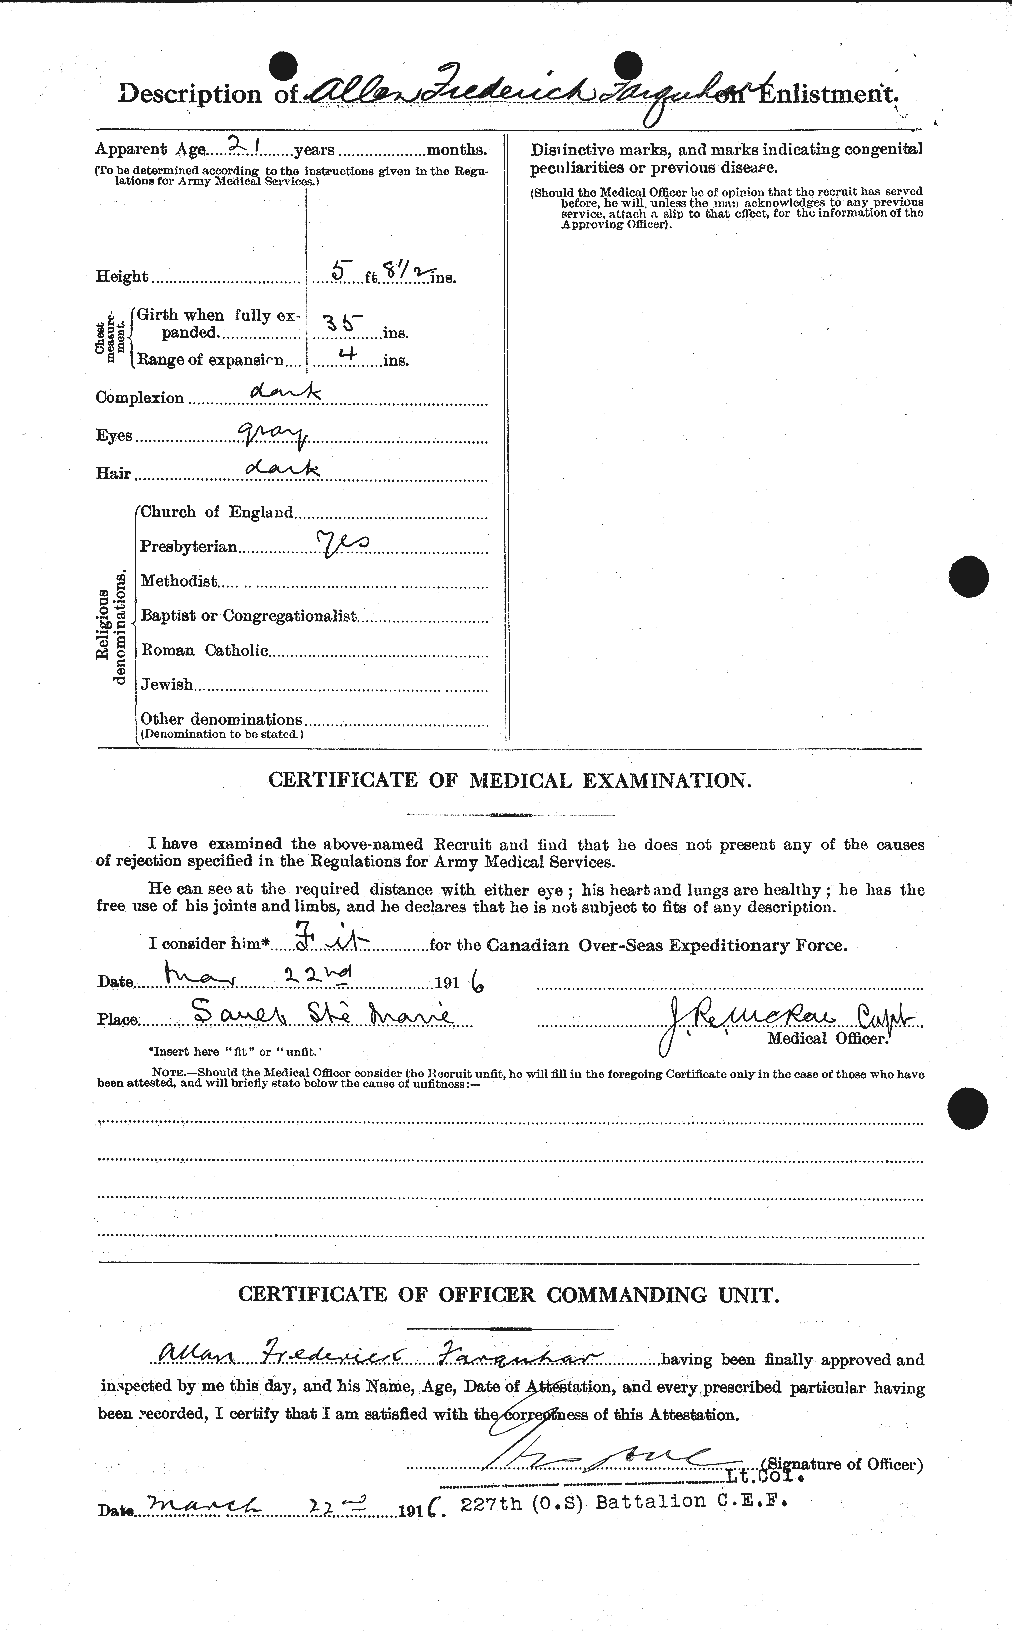 Dossiers du Personnel de la Première Guerre mondiale - CEC 318763b